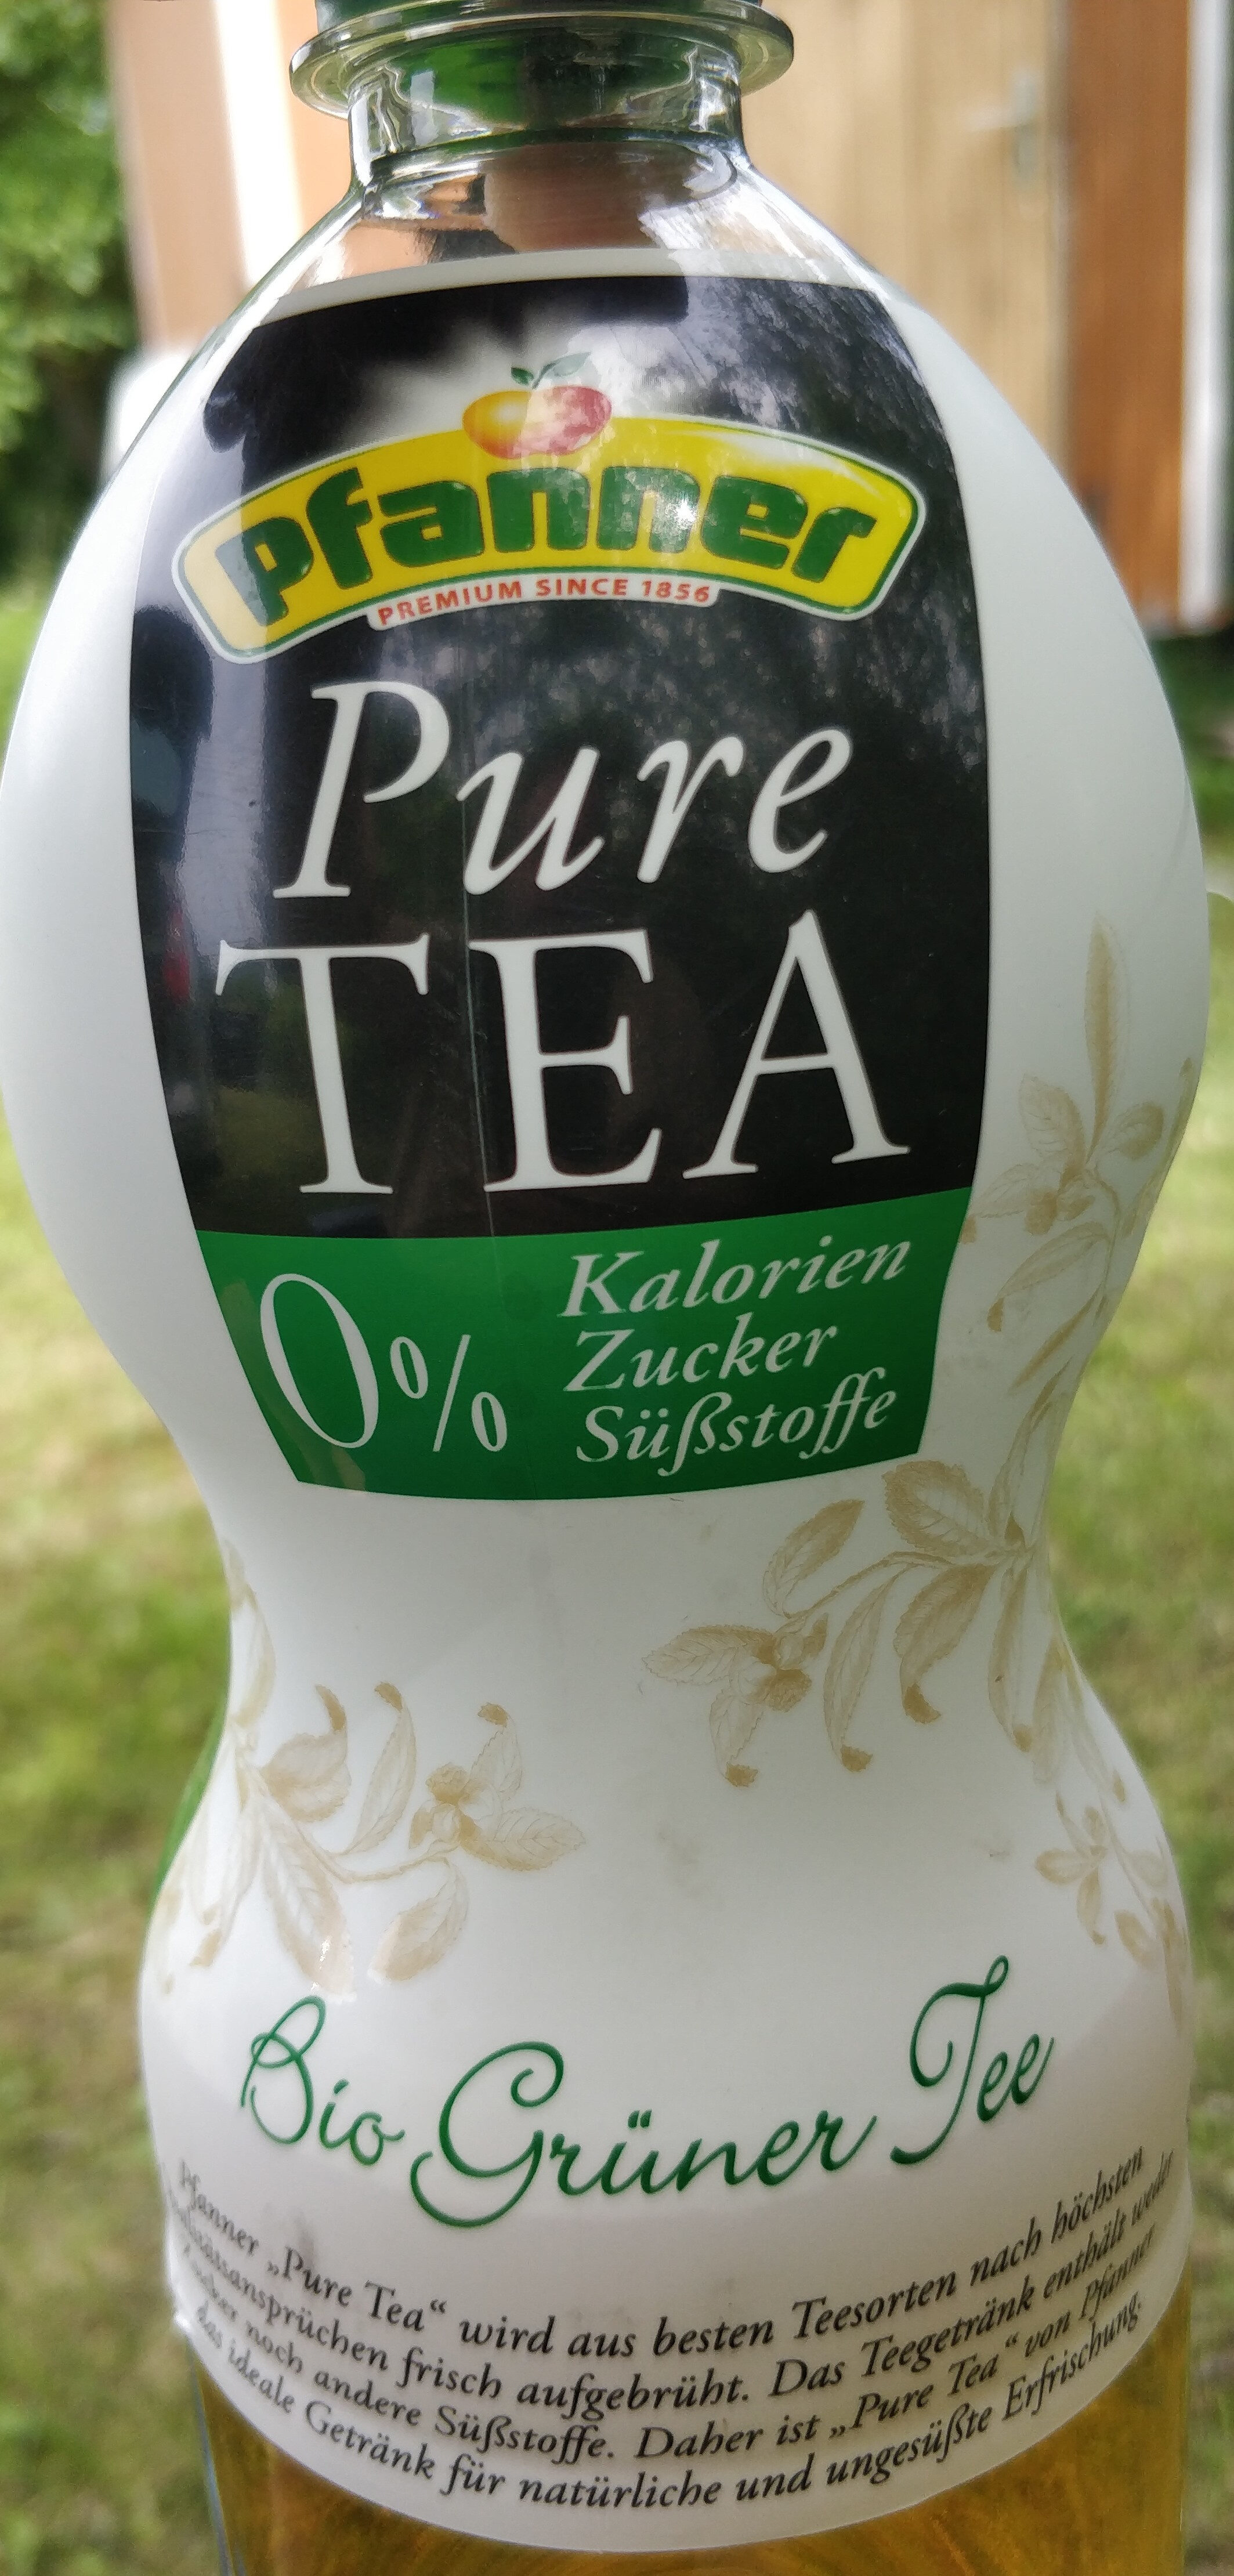 Pure Tea - Bio grüner Tee - Product - de